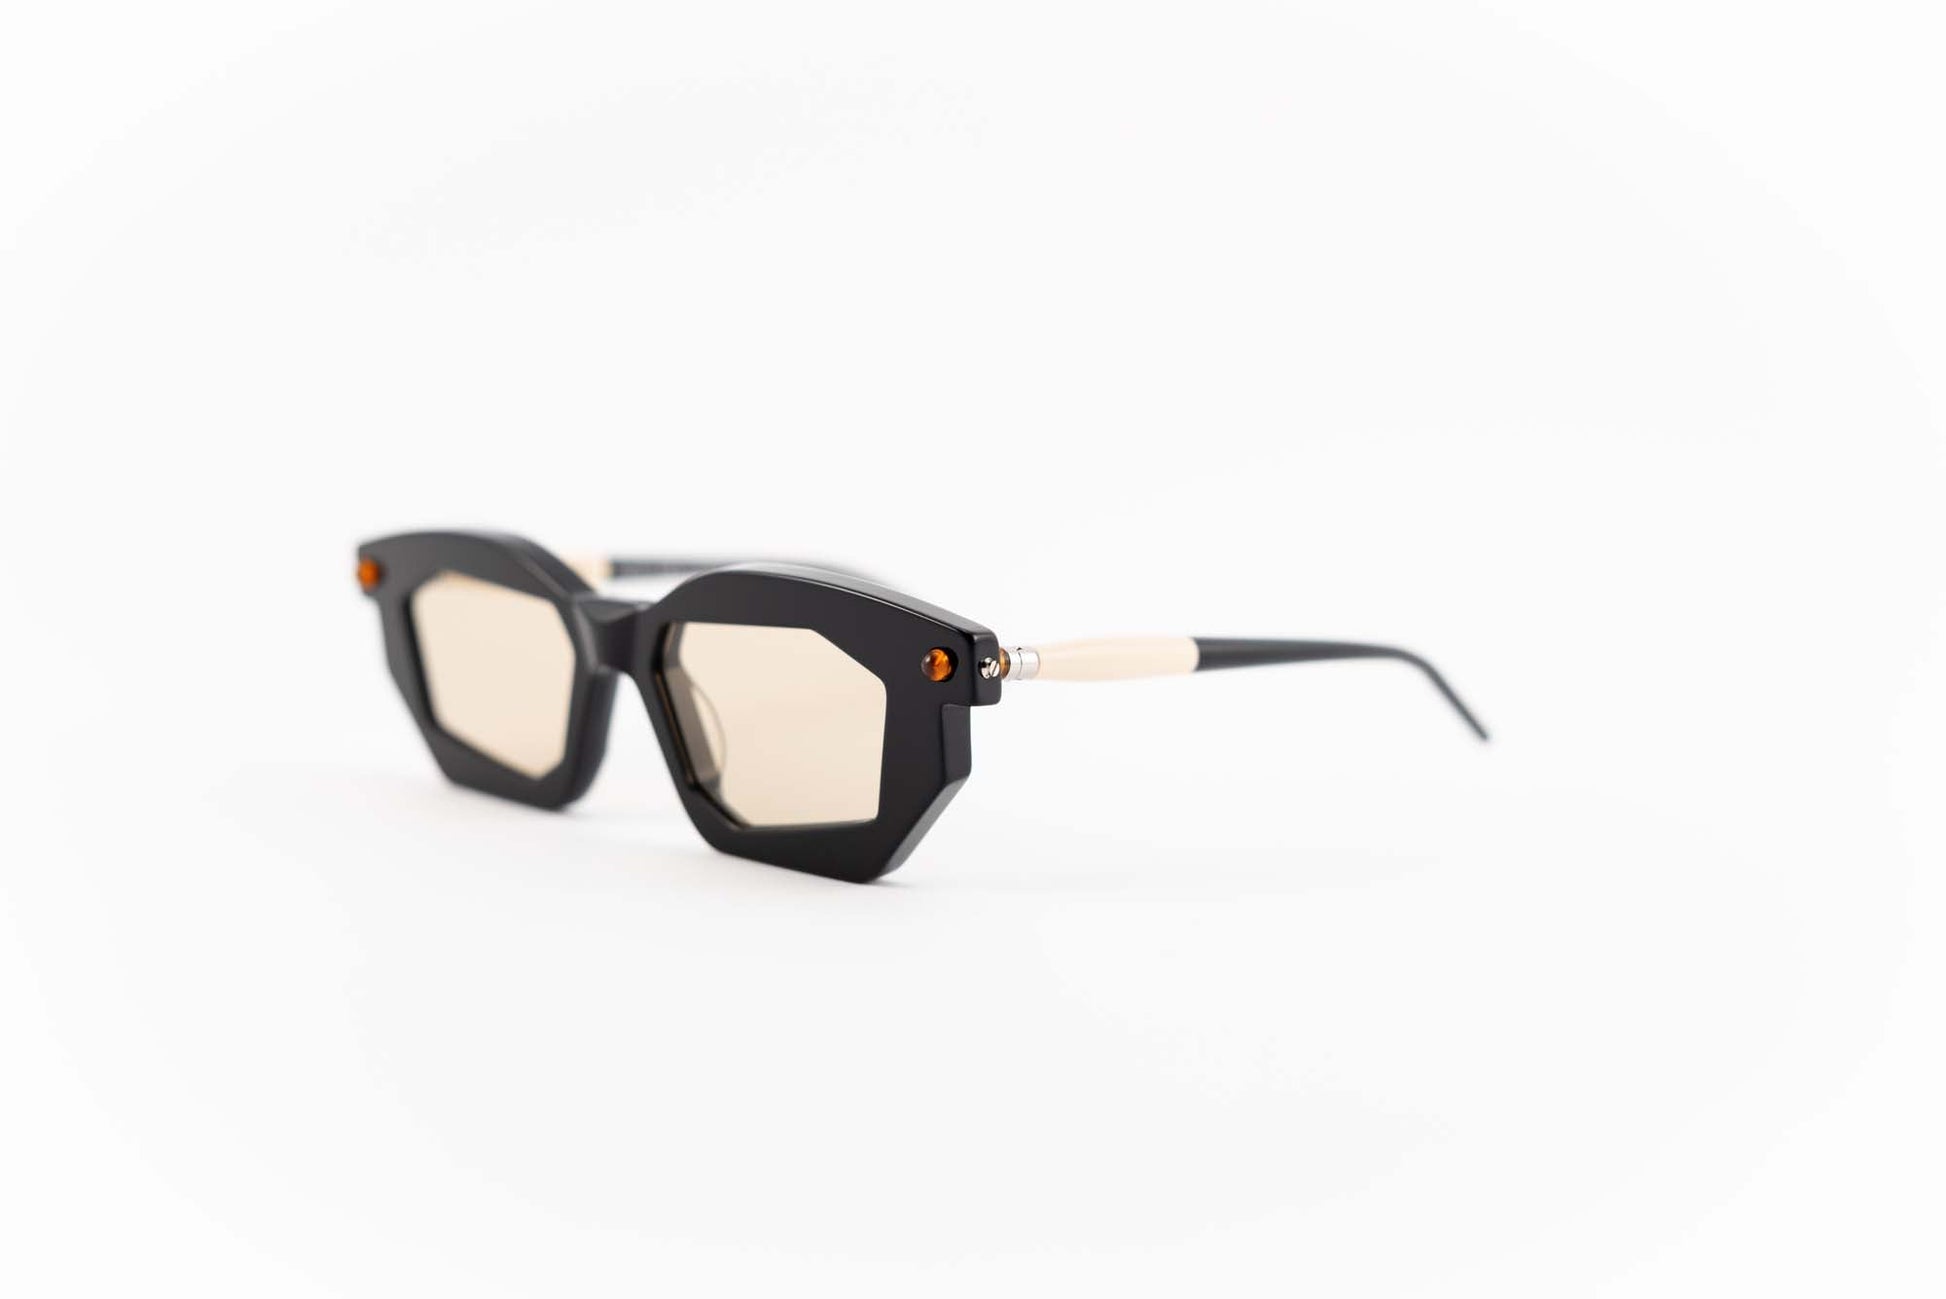 Kuboraum Occhiali da sole Nero / Acetato / Squadrato Kuboraum Maske P14 BS: occhiale in acetato nero poligonale da sole